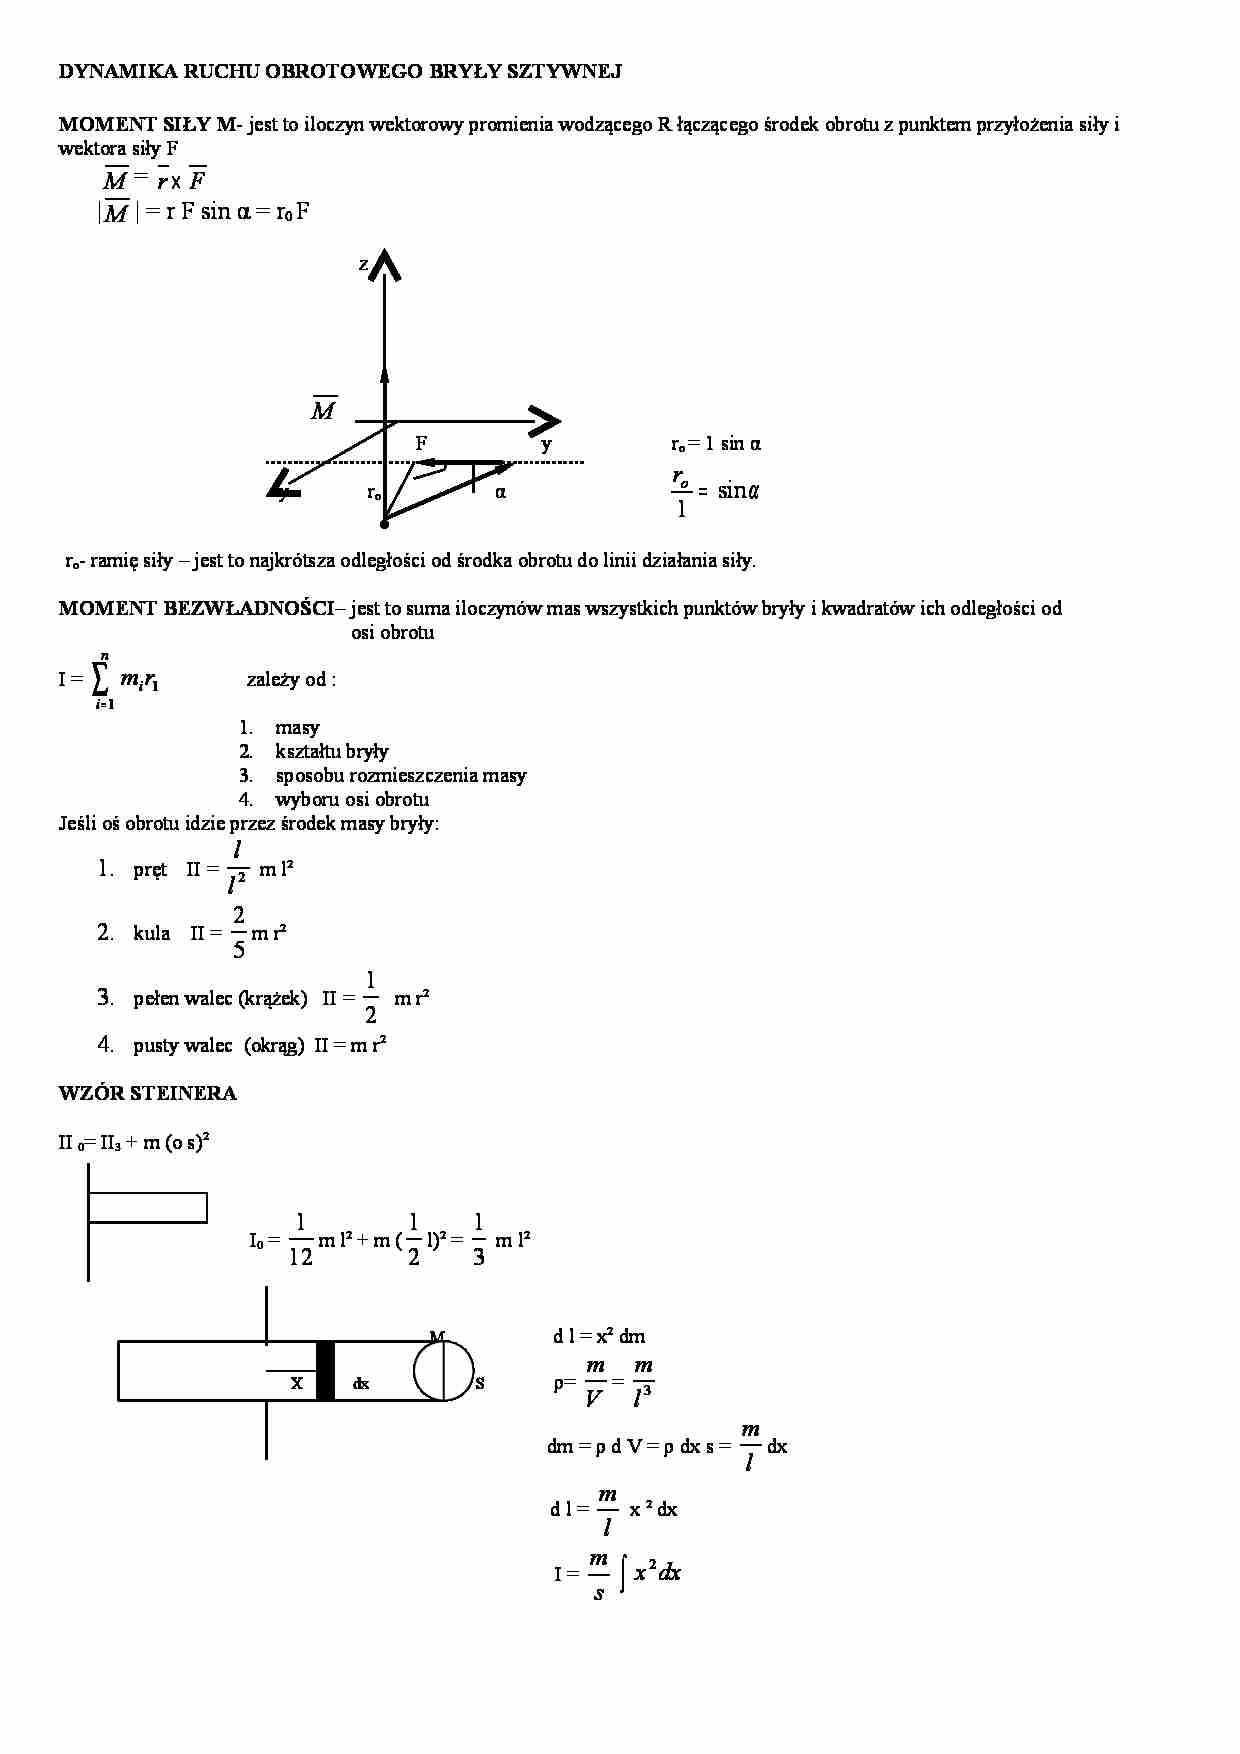 Dynamika ruchu obrotowego bryły sztywnej - strona 1